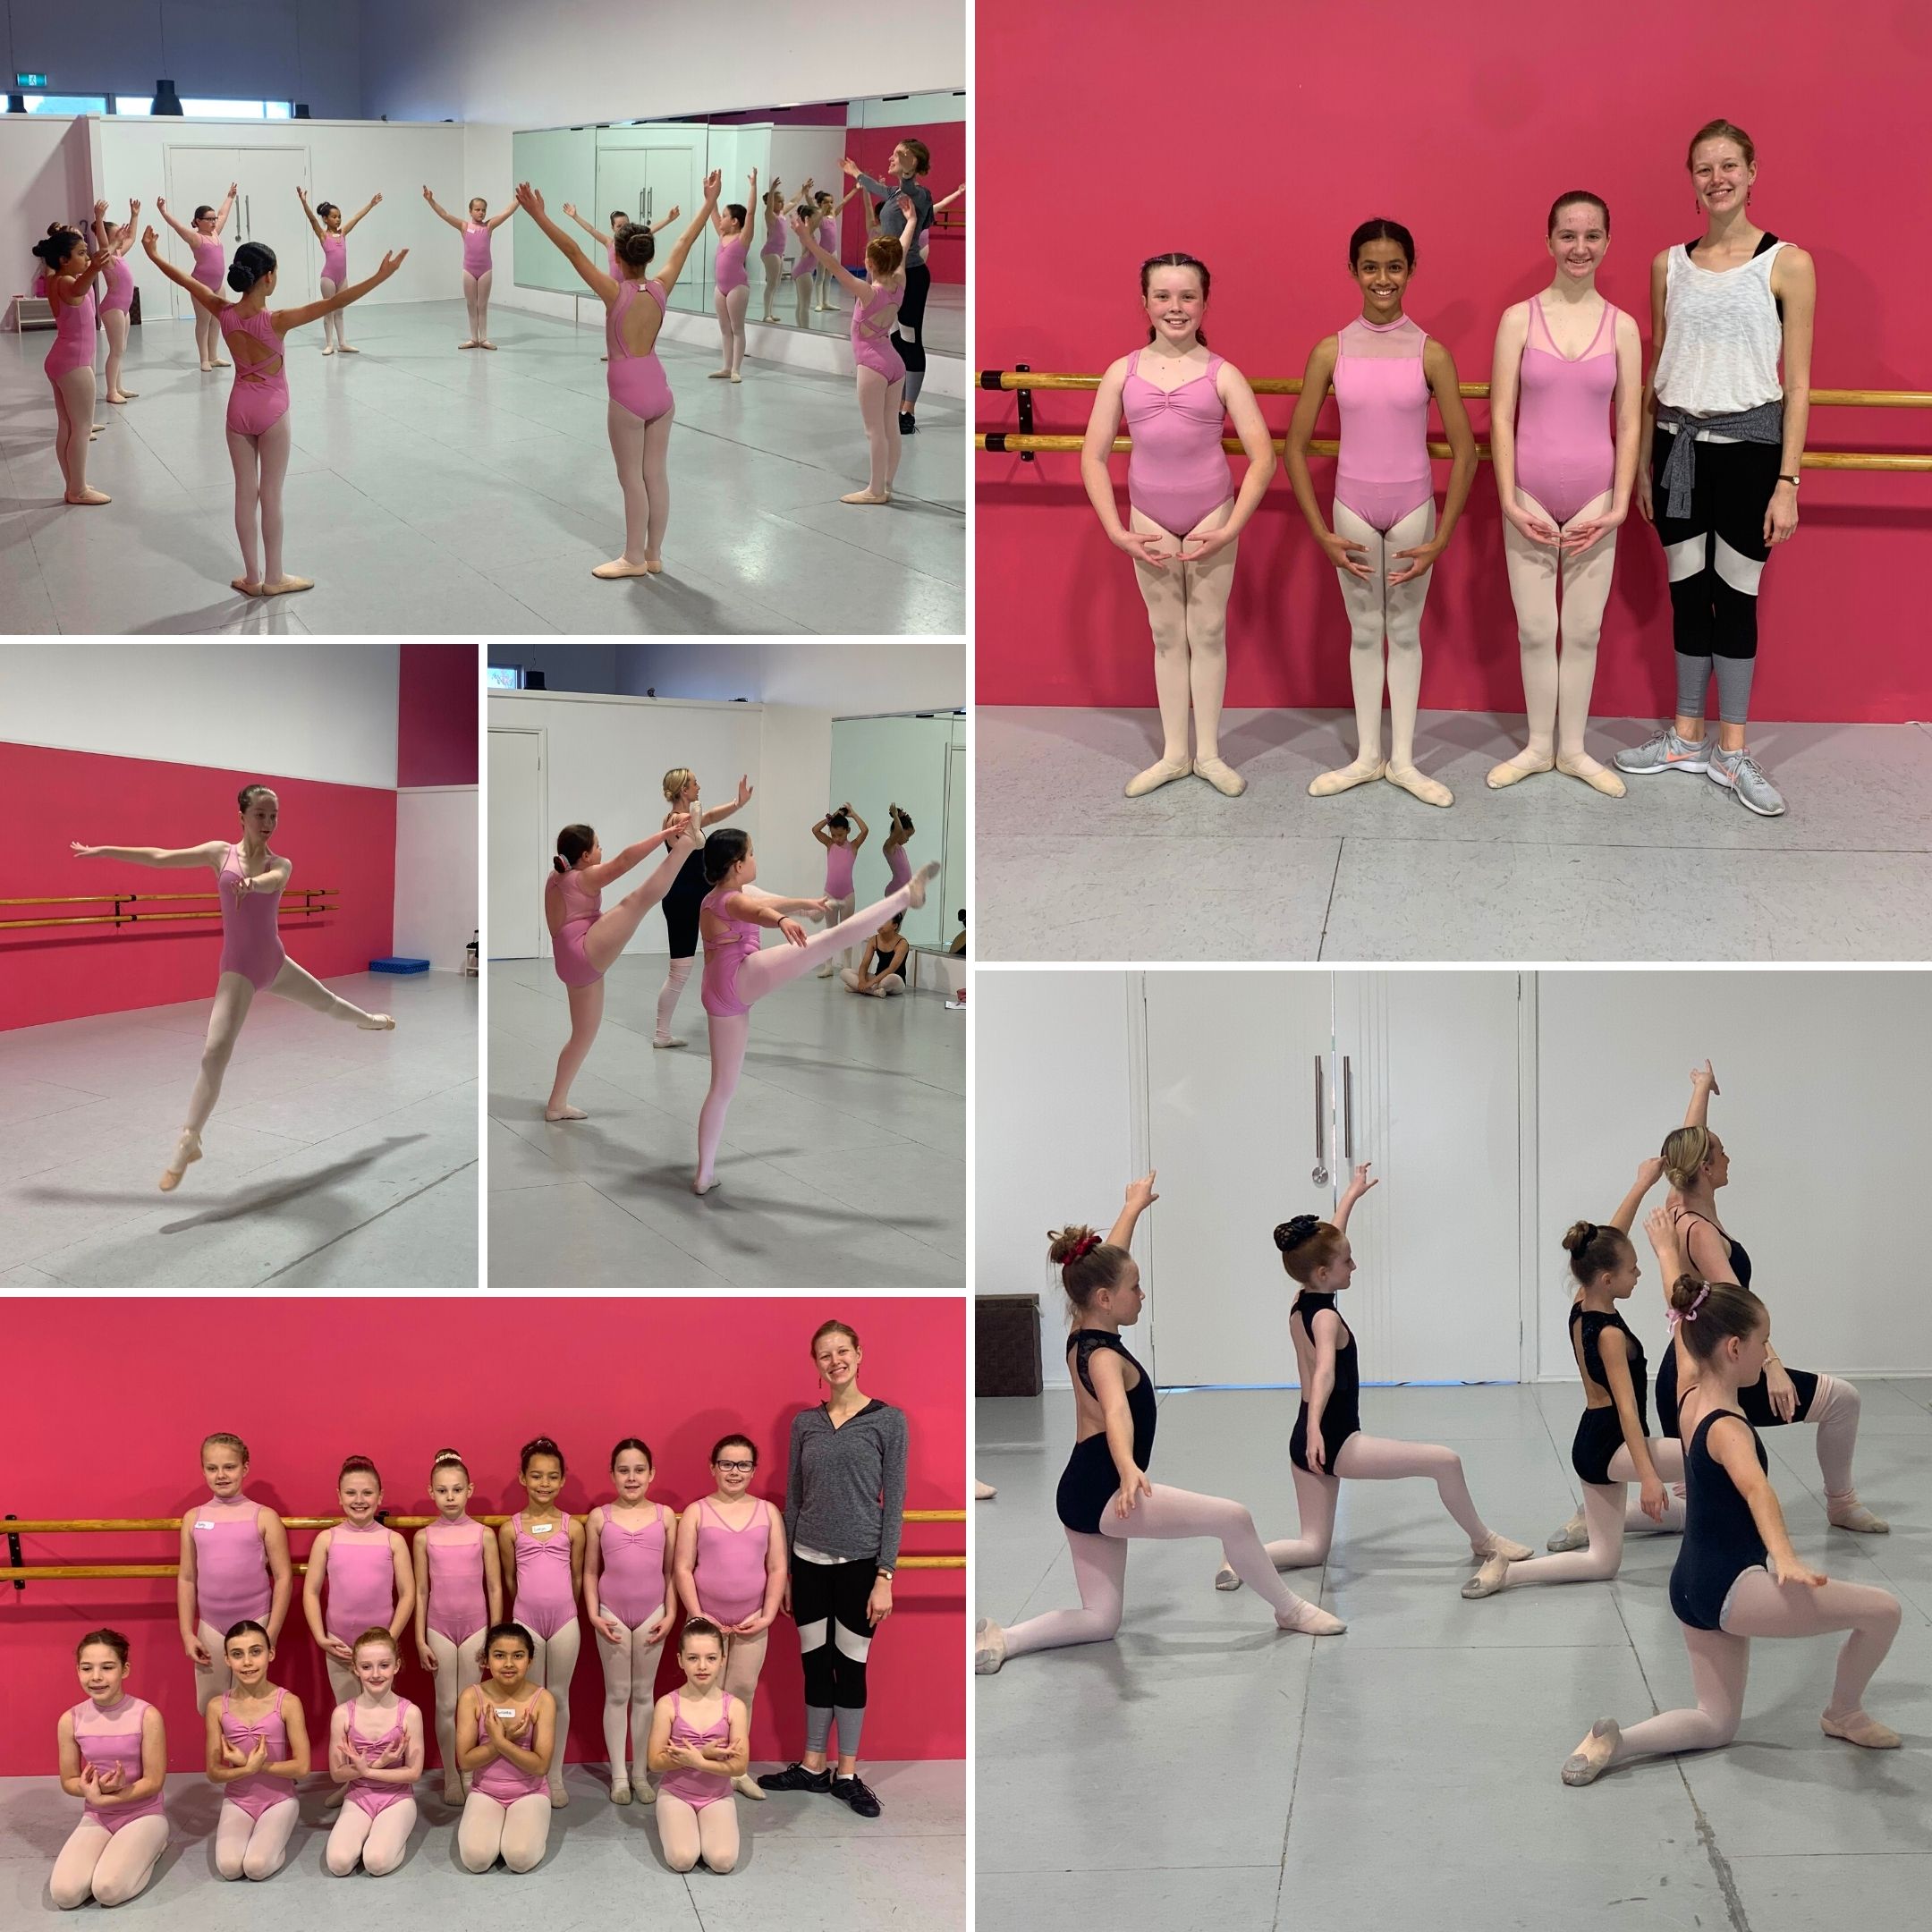 Ellenbrook Ballet Academy